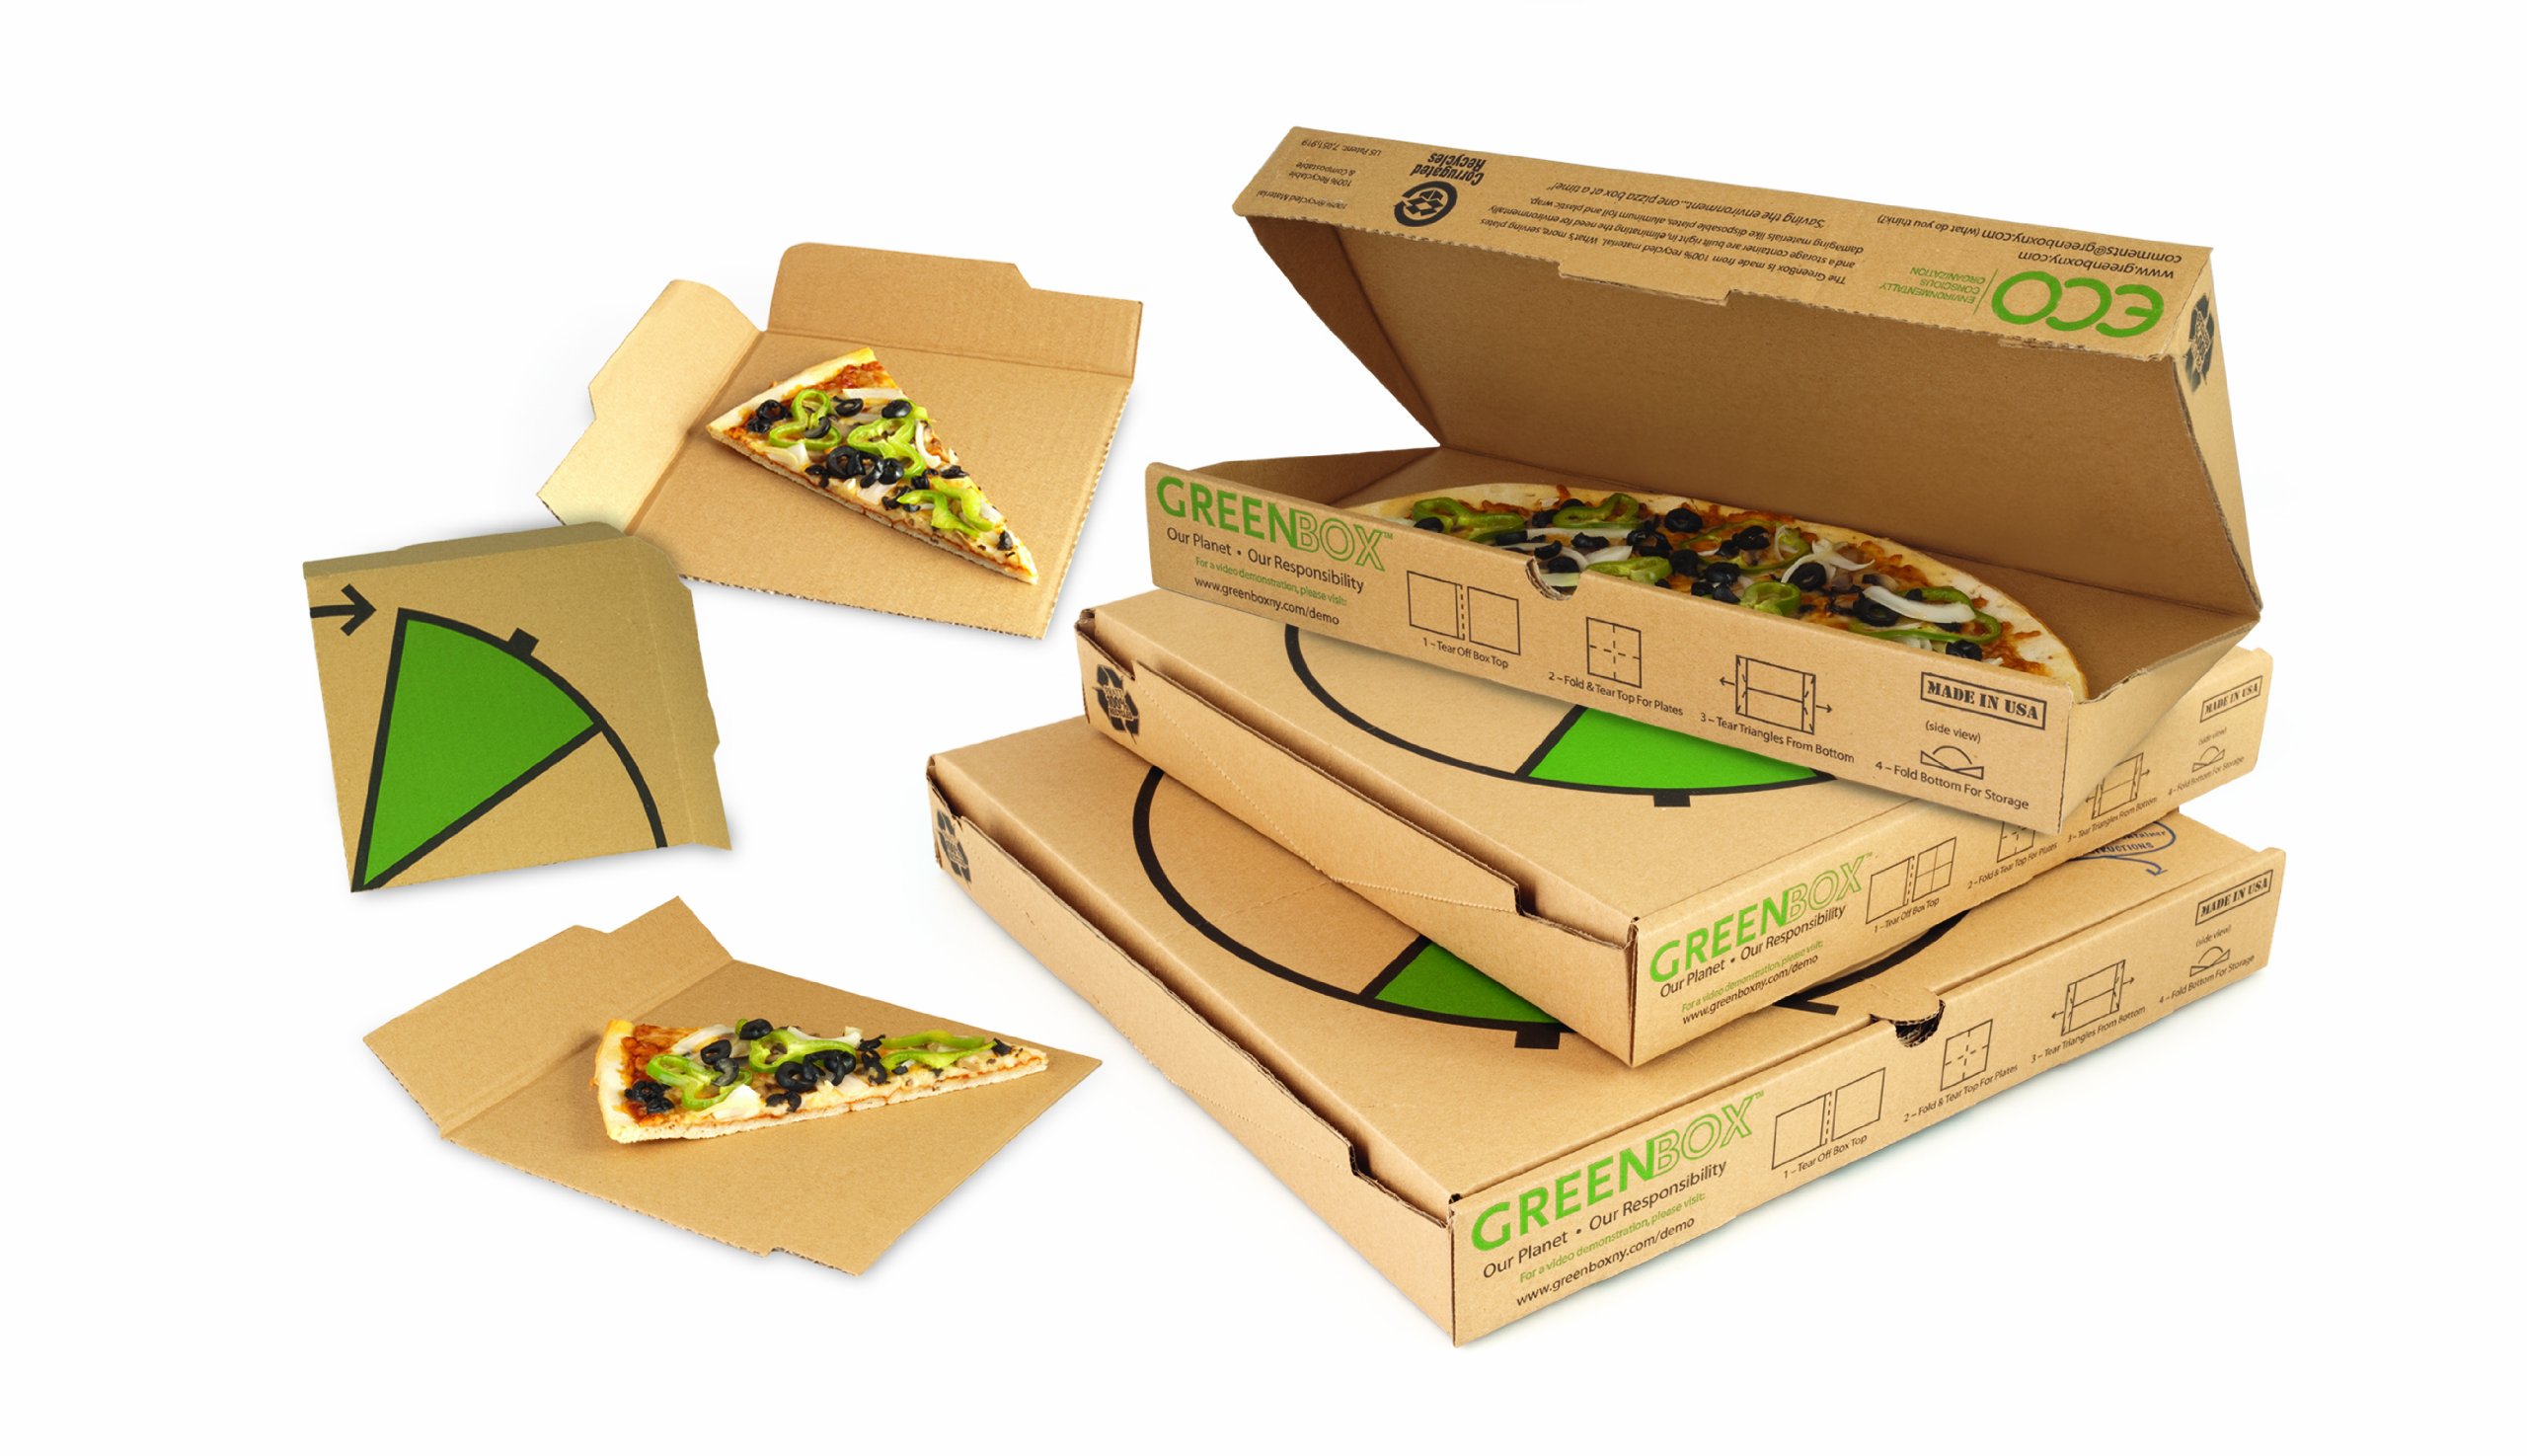 greenbox cajas de pizzas verdes para protejer el medio ambiente 813l g7grel